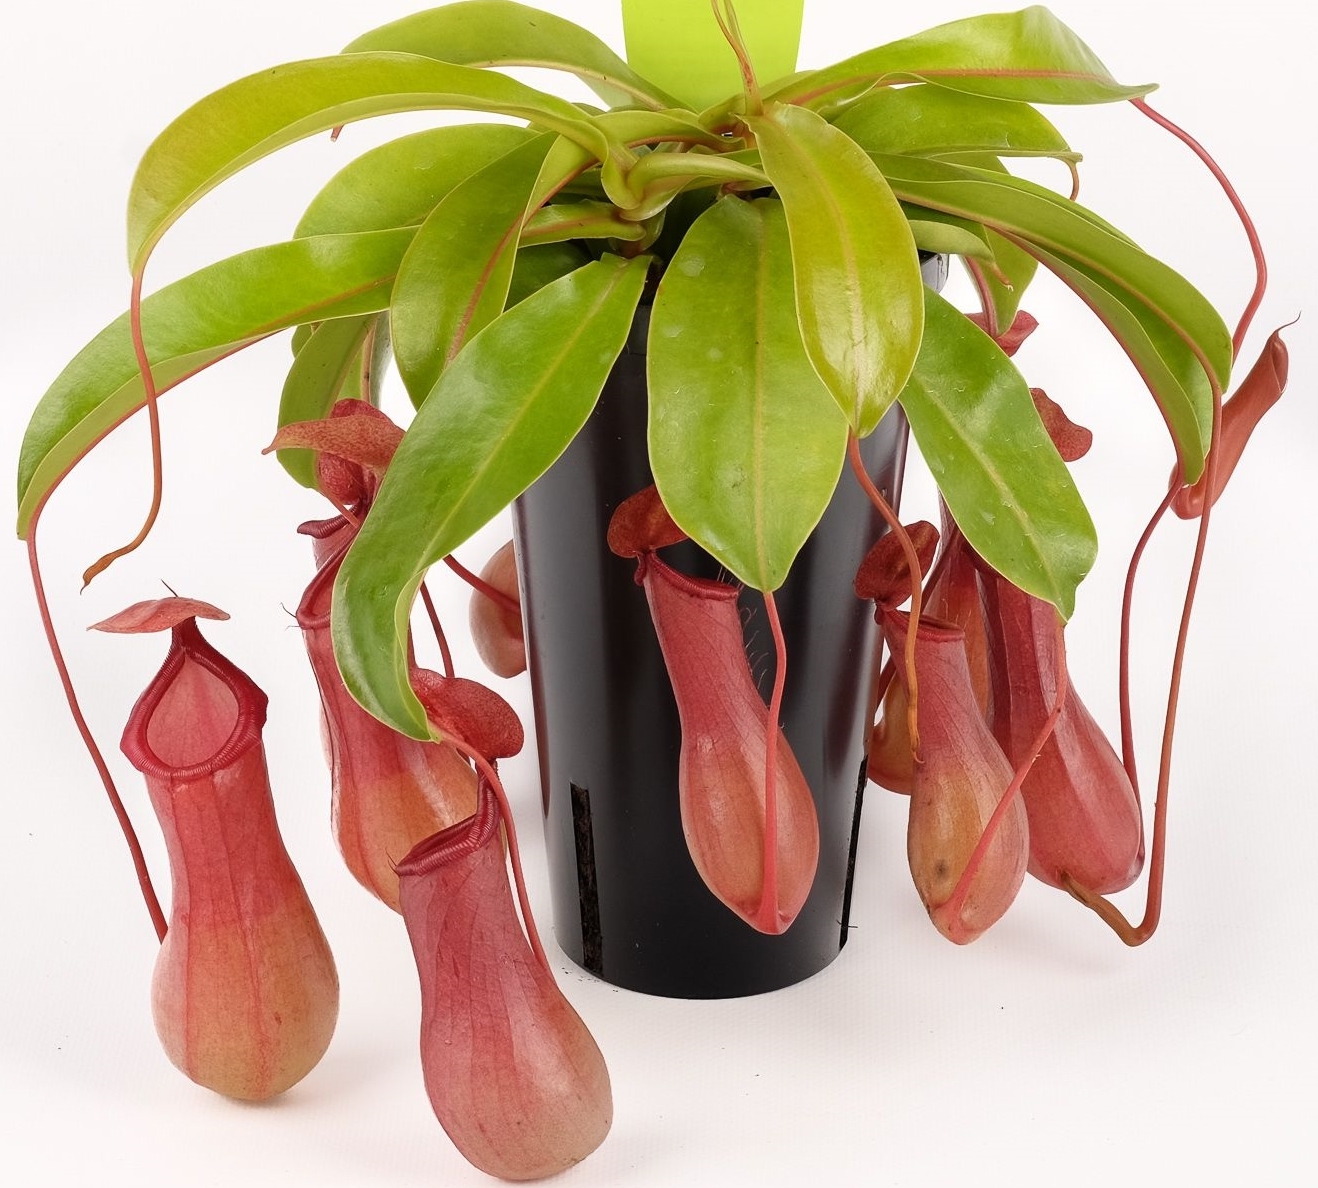 Nepenthes alata | South West Carnivorous Plants (growth venus flytraps)